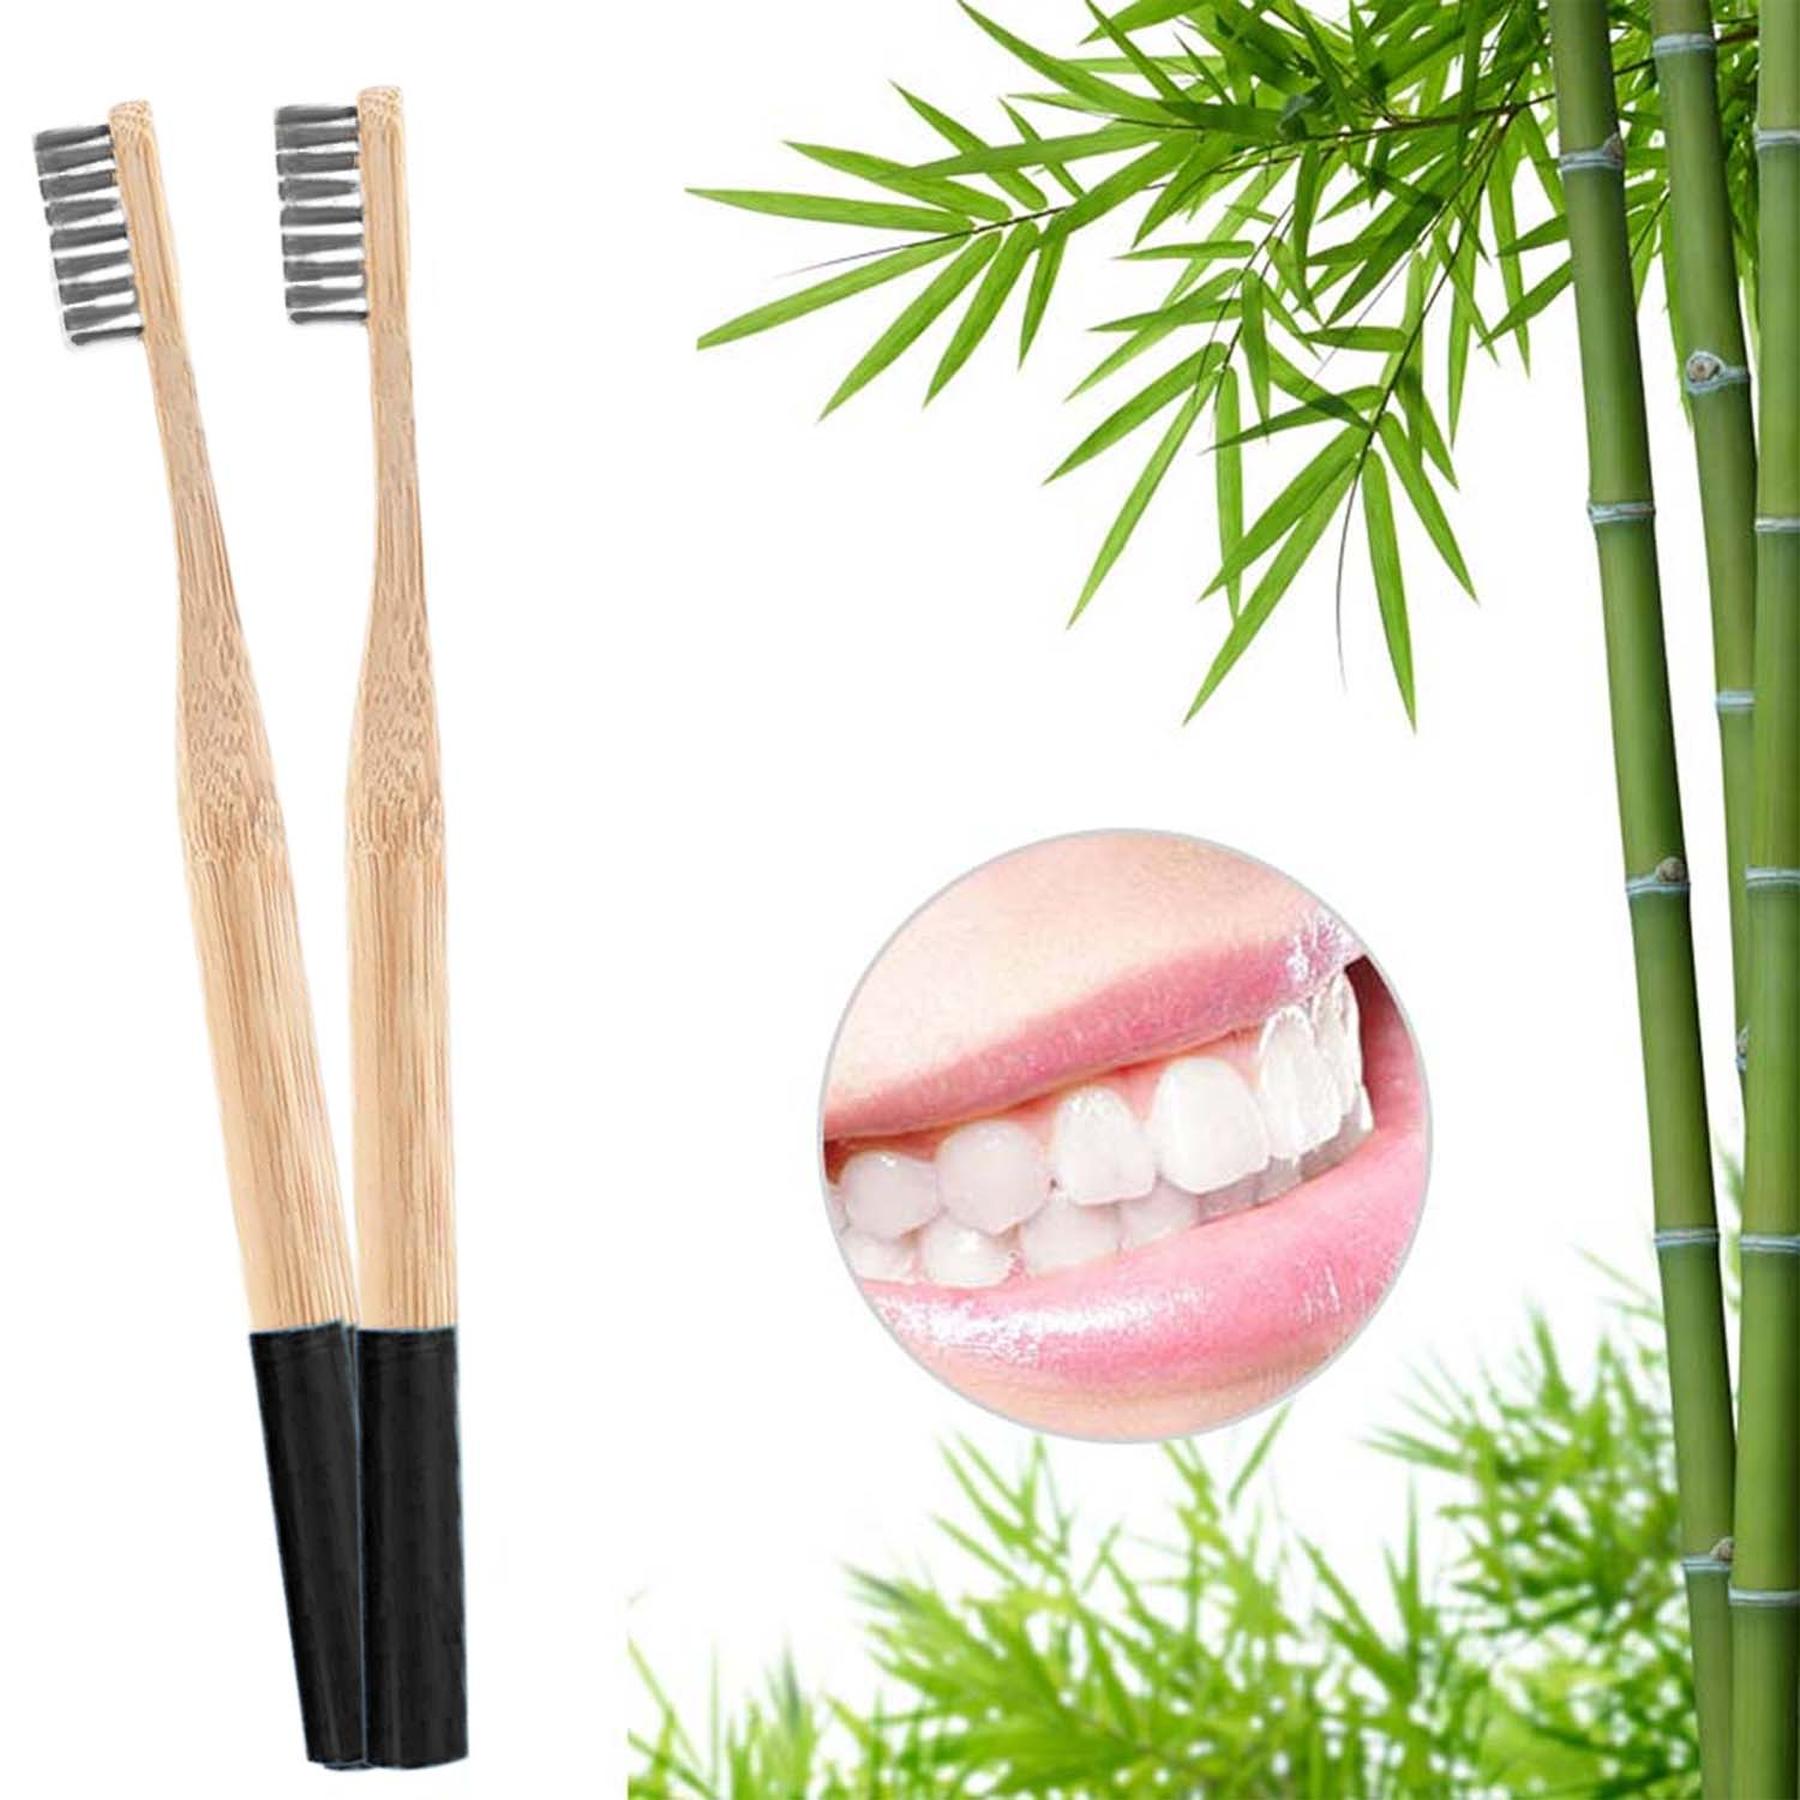 12er Set - Bambus Zahnbürsten - weiße Borsten